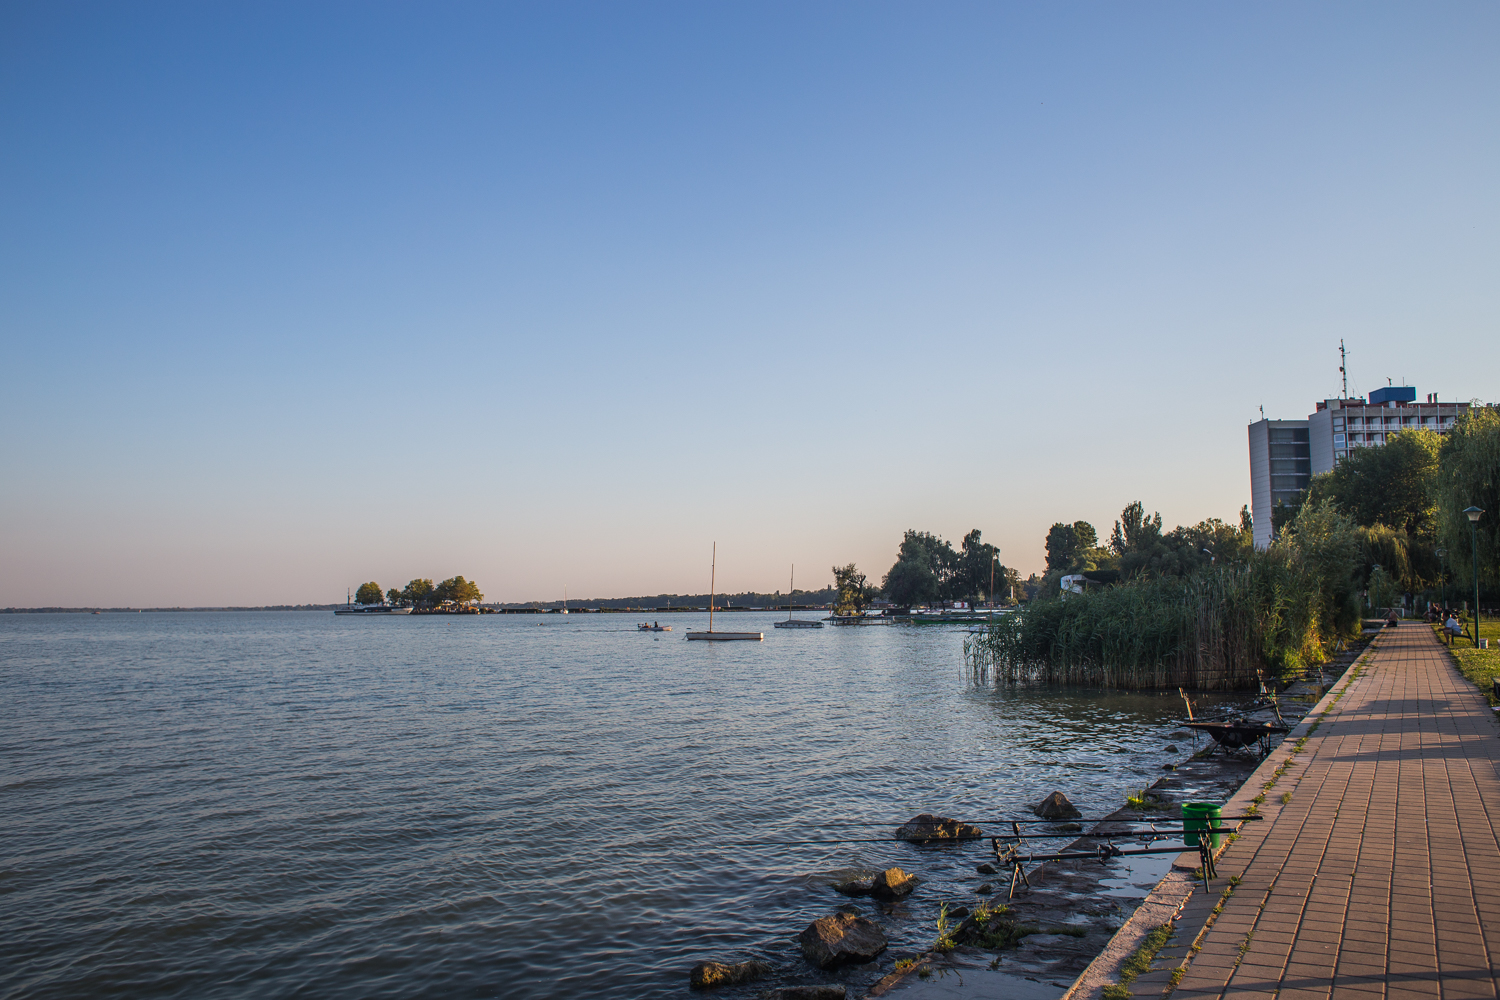 Heti híradó: Új kikötőt adnak át Balatonfüreden, Keszthelyen hétvégente a parton is kötelező a maszkviselés